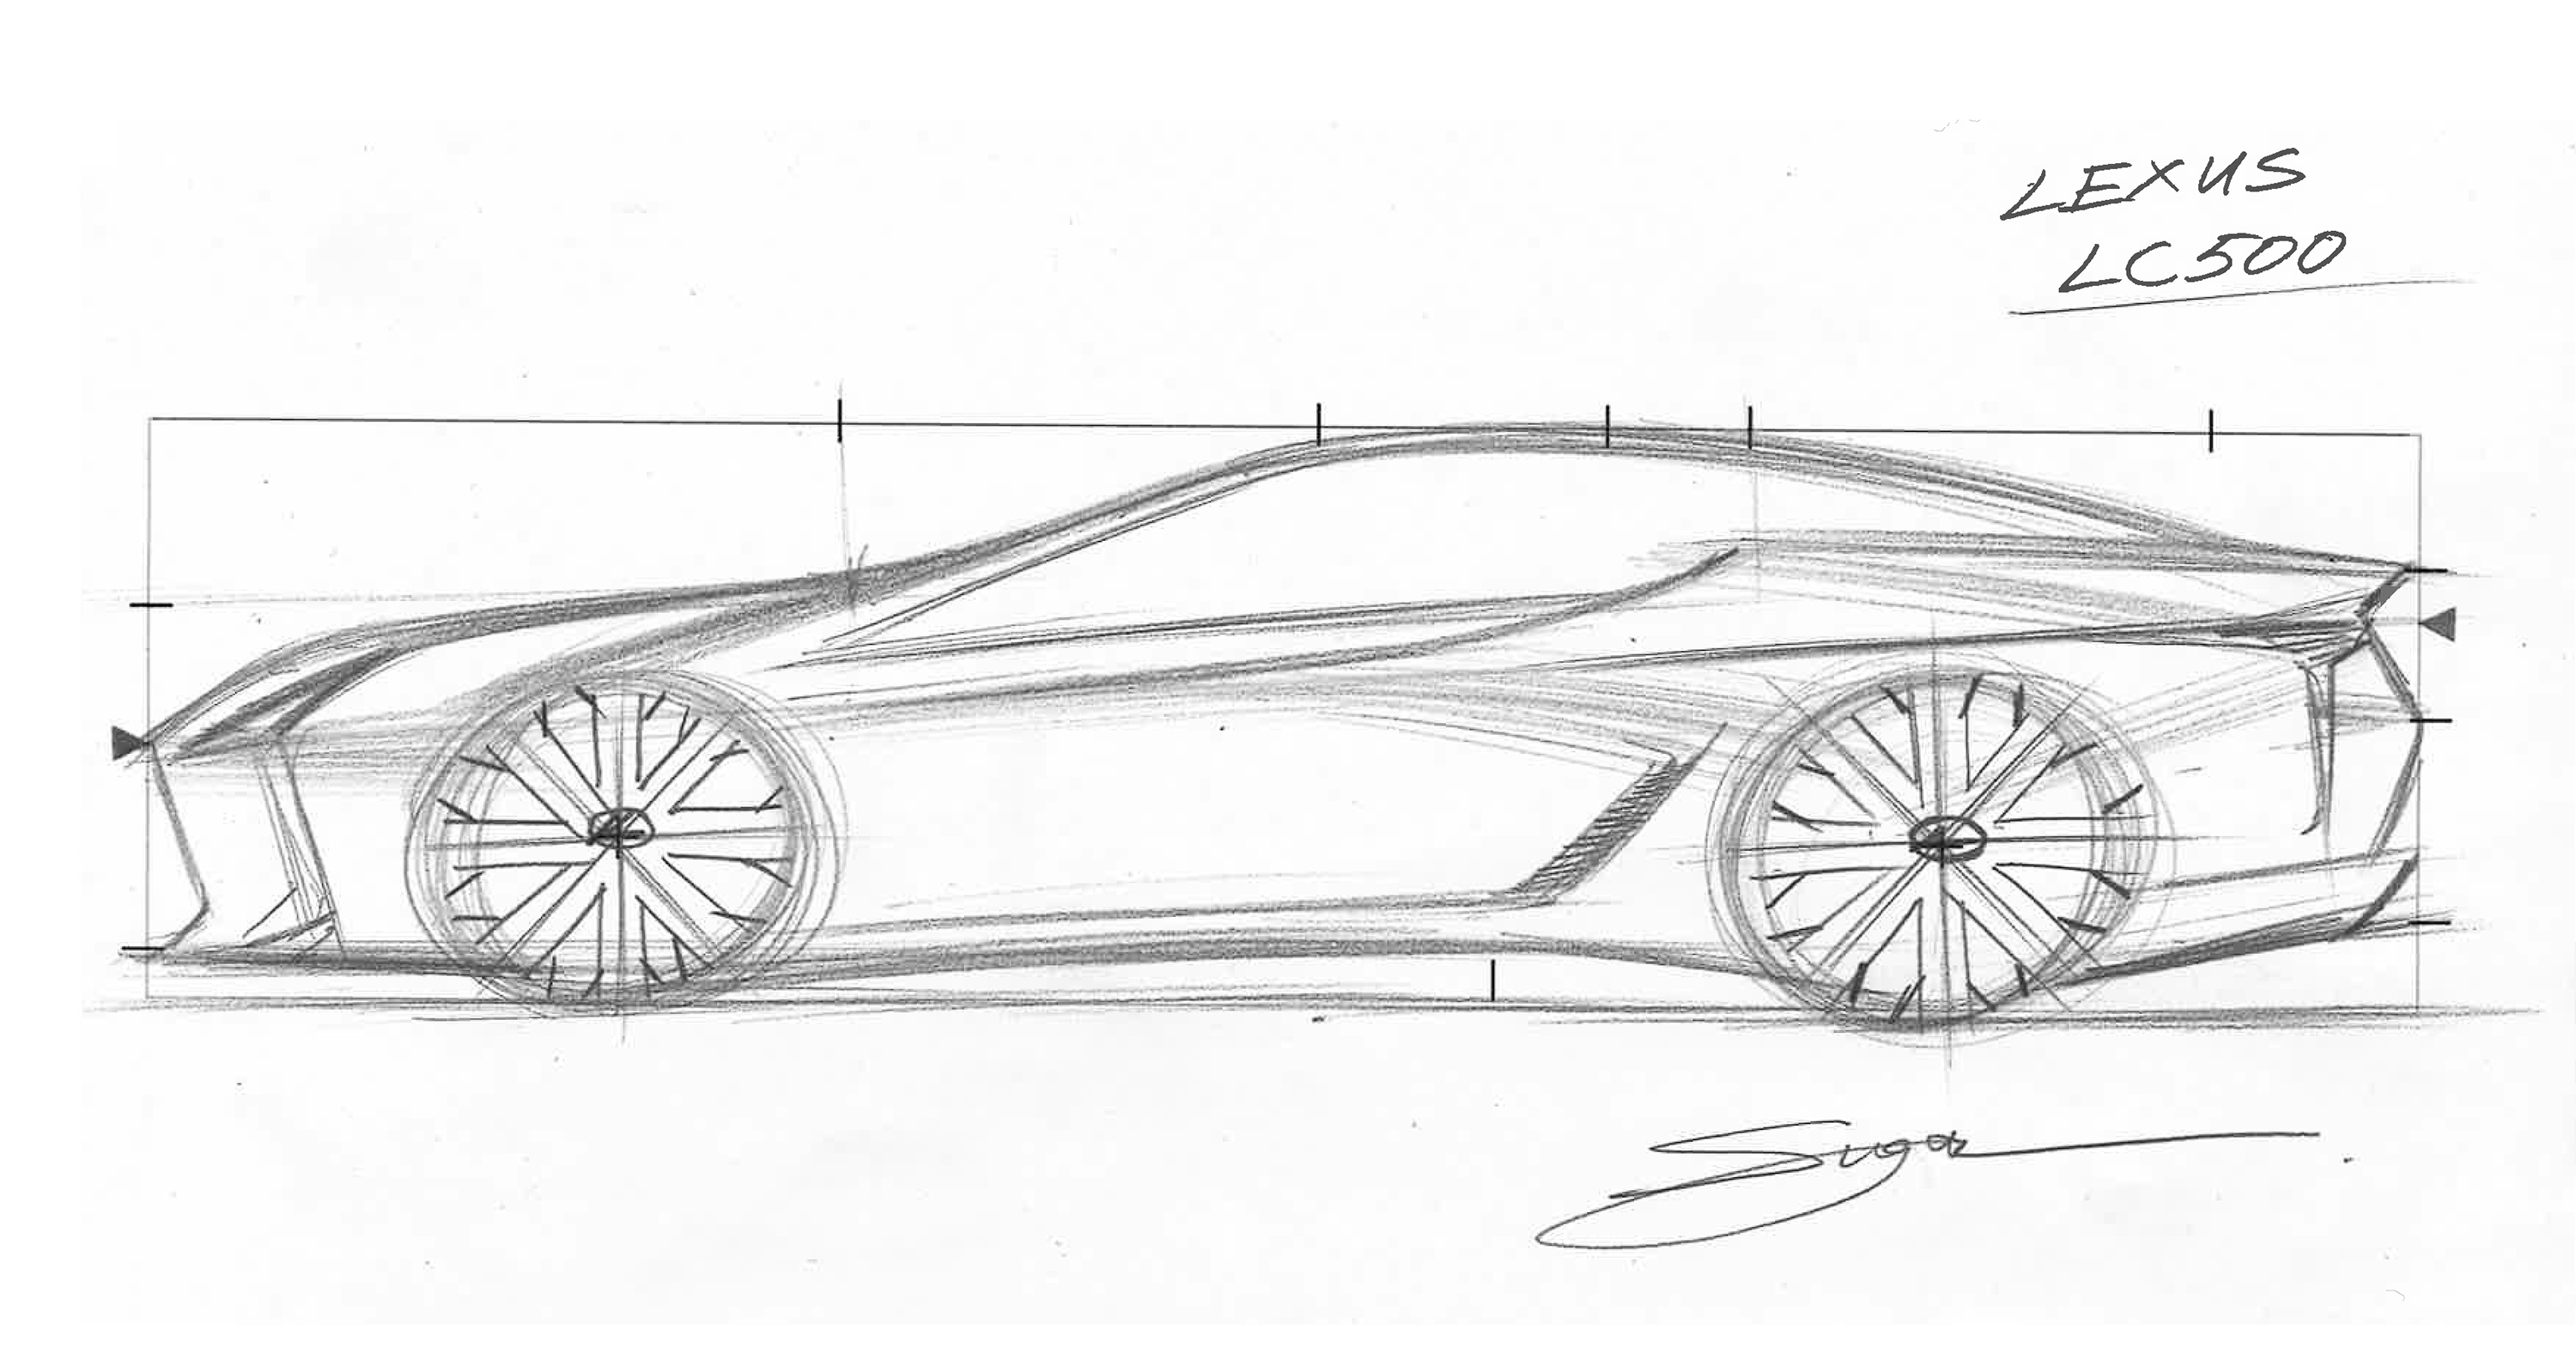 Lexus Creates muestra el proceso de diseño de los modelos más emblemáticos de la marca